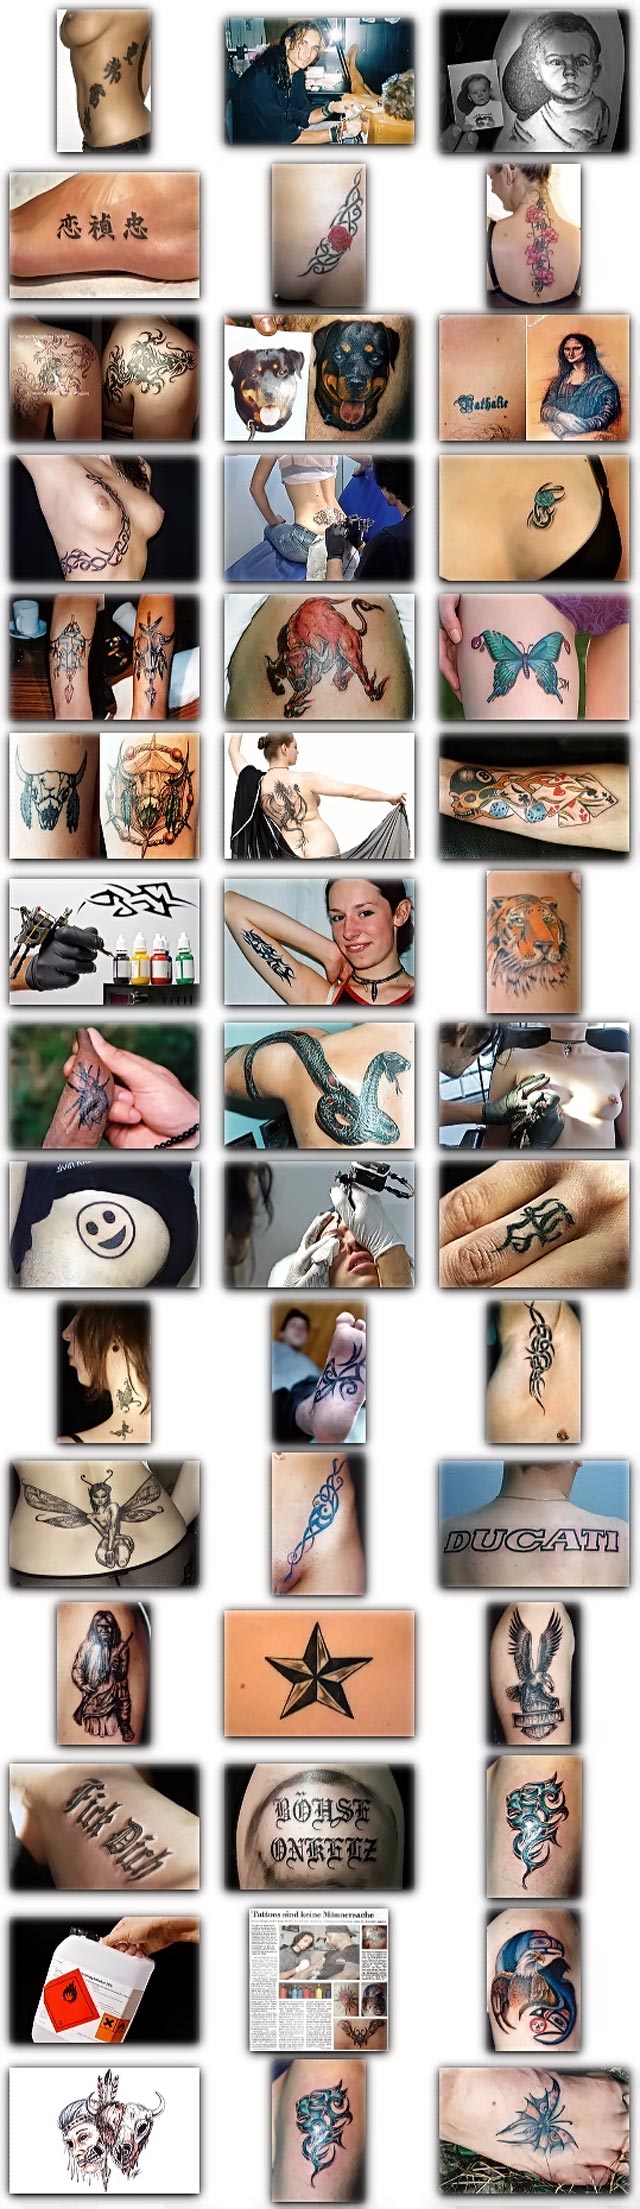 Tattoo-Fotos